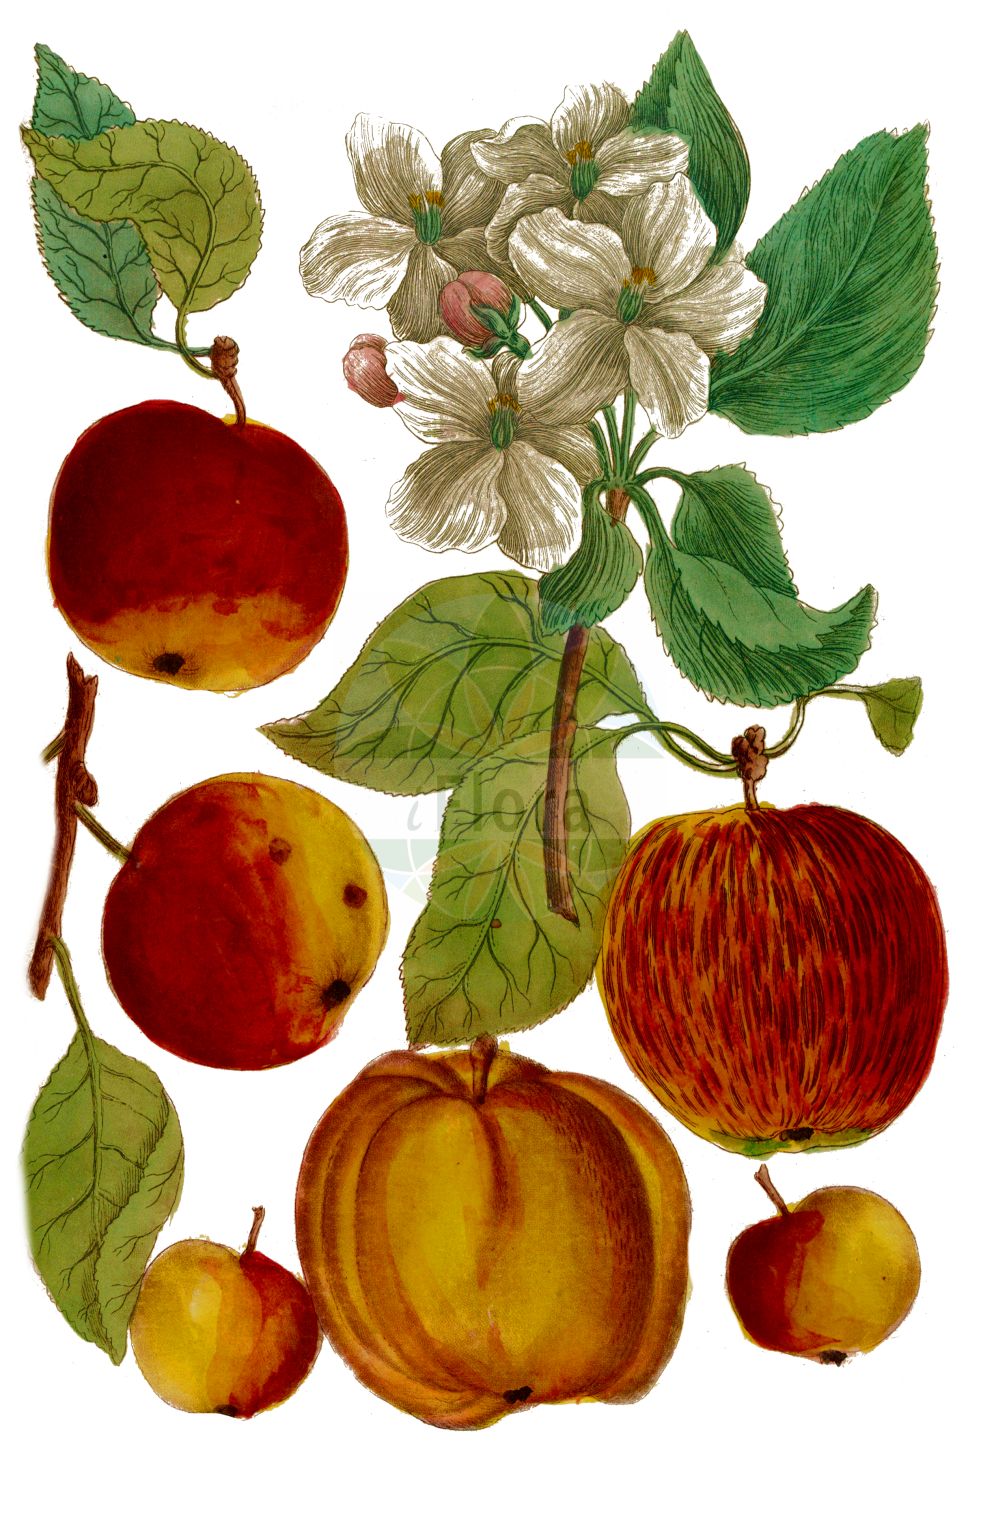 Historische Abbildung von Malus pumila (Garten-Apfel - Orchard Apple). Das Bild zeigt Blatt, Bluete, Frucht und Same. ---- Historical Drawing of Malus pumila (Garten-Apfel - Orchard Apple). The image is showing leaf, flower, fruit and seed.(Malus pumila,Garten-Apfel,Orchard Apple,Malus dioica,Malus domestica,Malus frutescens,Malus paradisiaca,Malus pumila,Malus sativa,Malus sieversii,Malus sylvestris,Pyrenia malus,Pyrus cavillea,Pyrus dioica,Pyrus epirotica,Pyrus paradisiaca,Pyrus prasomila,Pyrus pumila,Pyrus sieversii,Pyrus sylvestris,Sorbus malus,Garten-Apfel,Kultur-Apfel,Orchard Apple,Malus,Apfel,Apple,Rosaceae,Rosengewächse,Rose family,Blatt,Bluete,Frucht,Same,leaf,flower,fruit,seed,Weinmann (1737-1745))